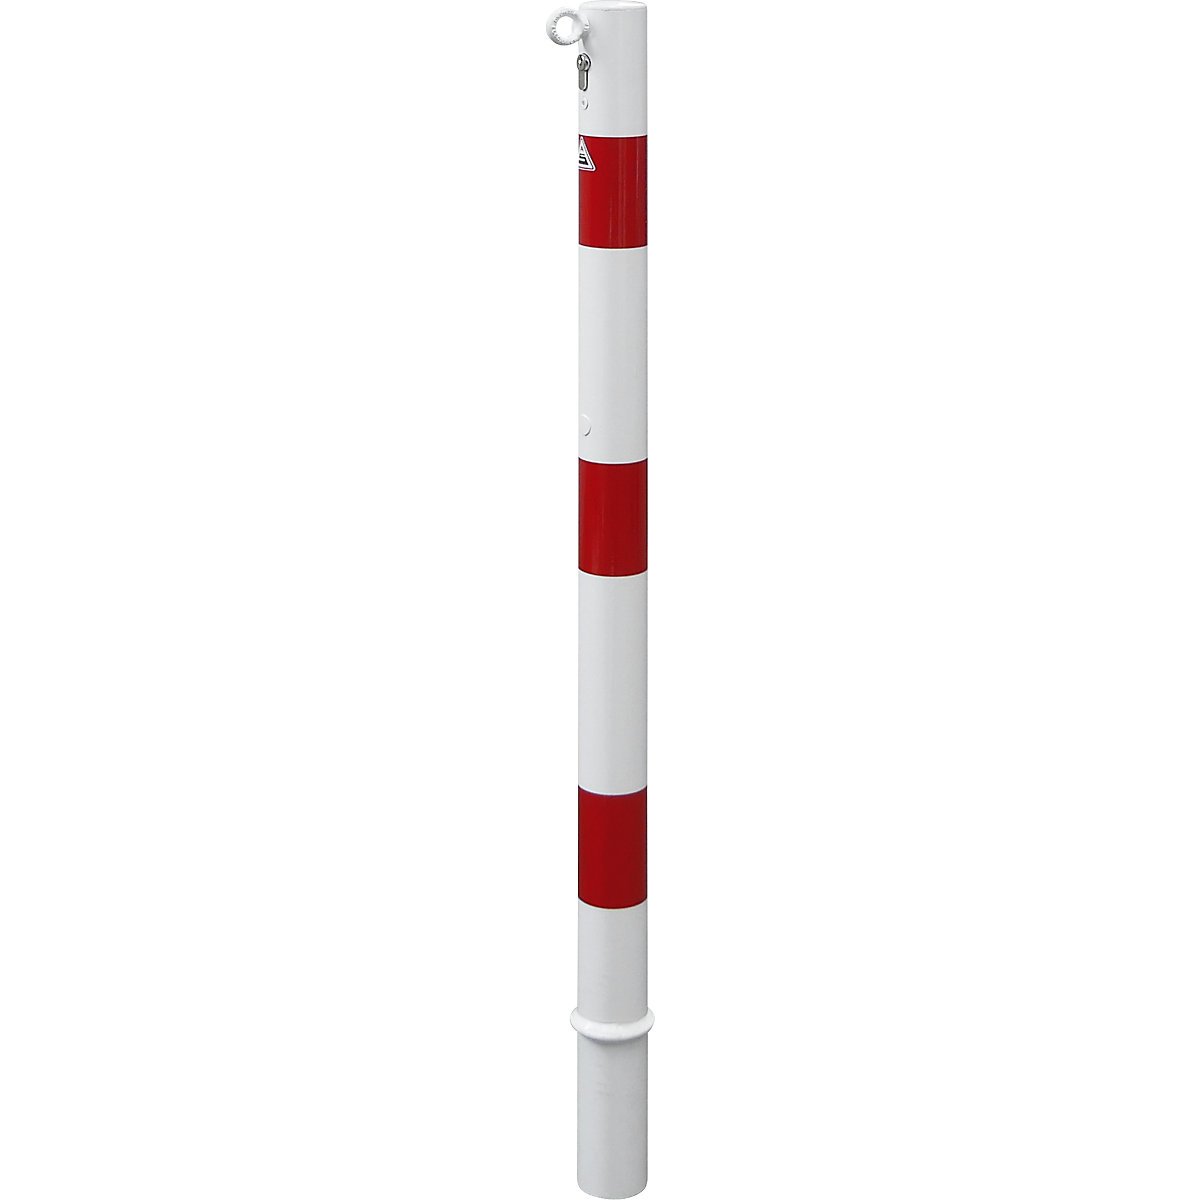 Słupek odgradzający, Ø 60 mm, biały / czerwony, wyjmowany z zamkiem bębenkowym, z 1 zaczepem-3